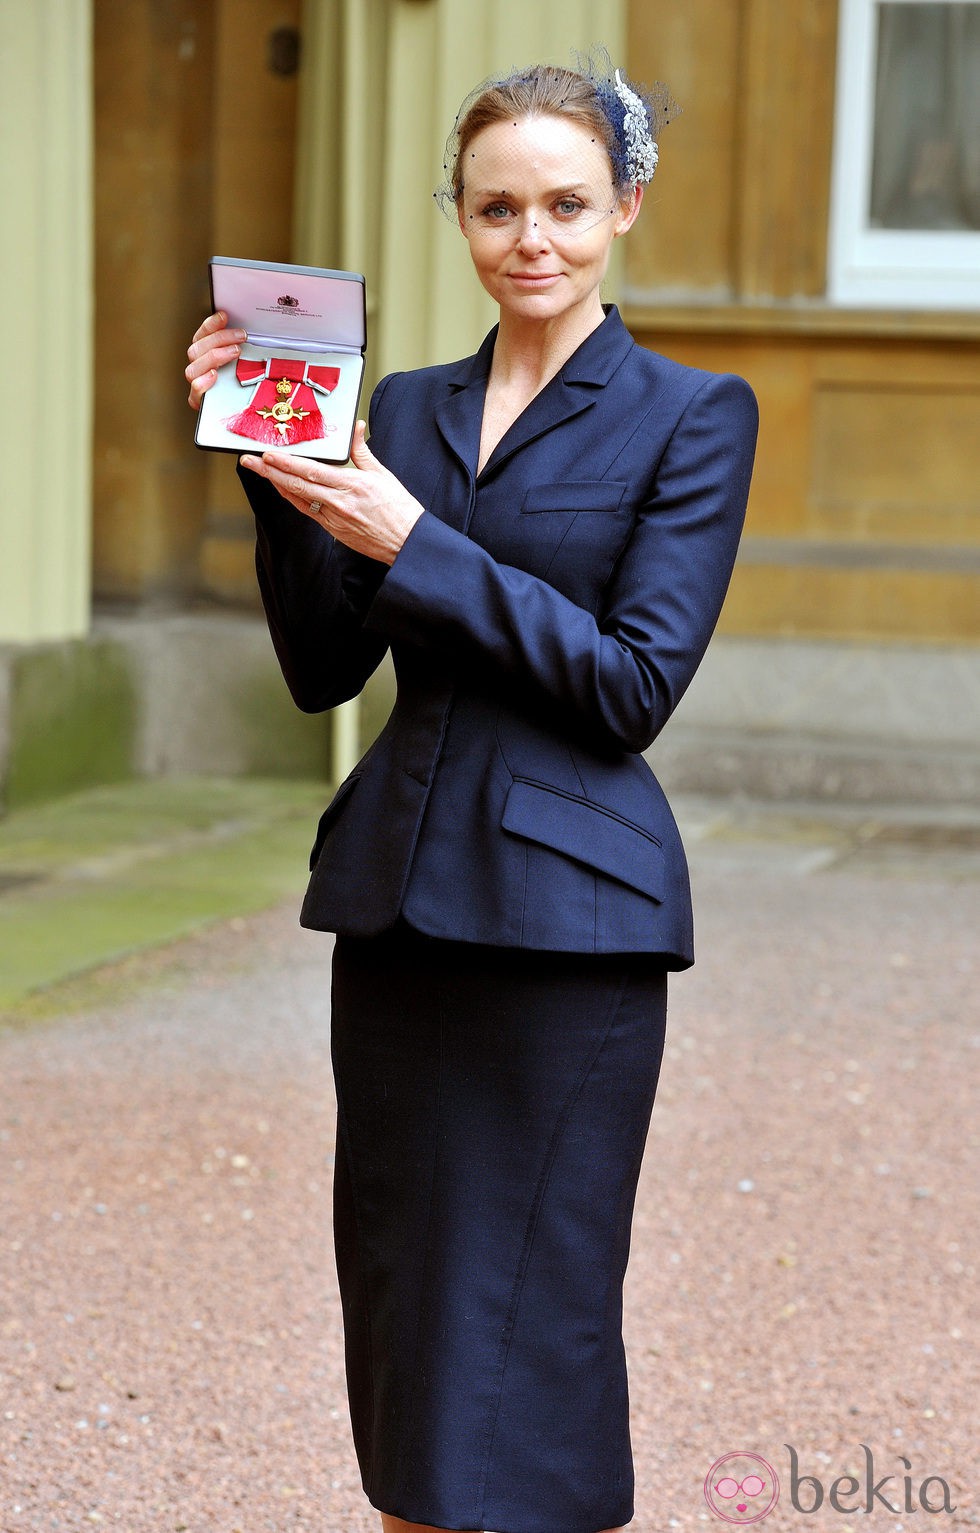 Stella McCartney recibe la Orden del Imperio Británico